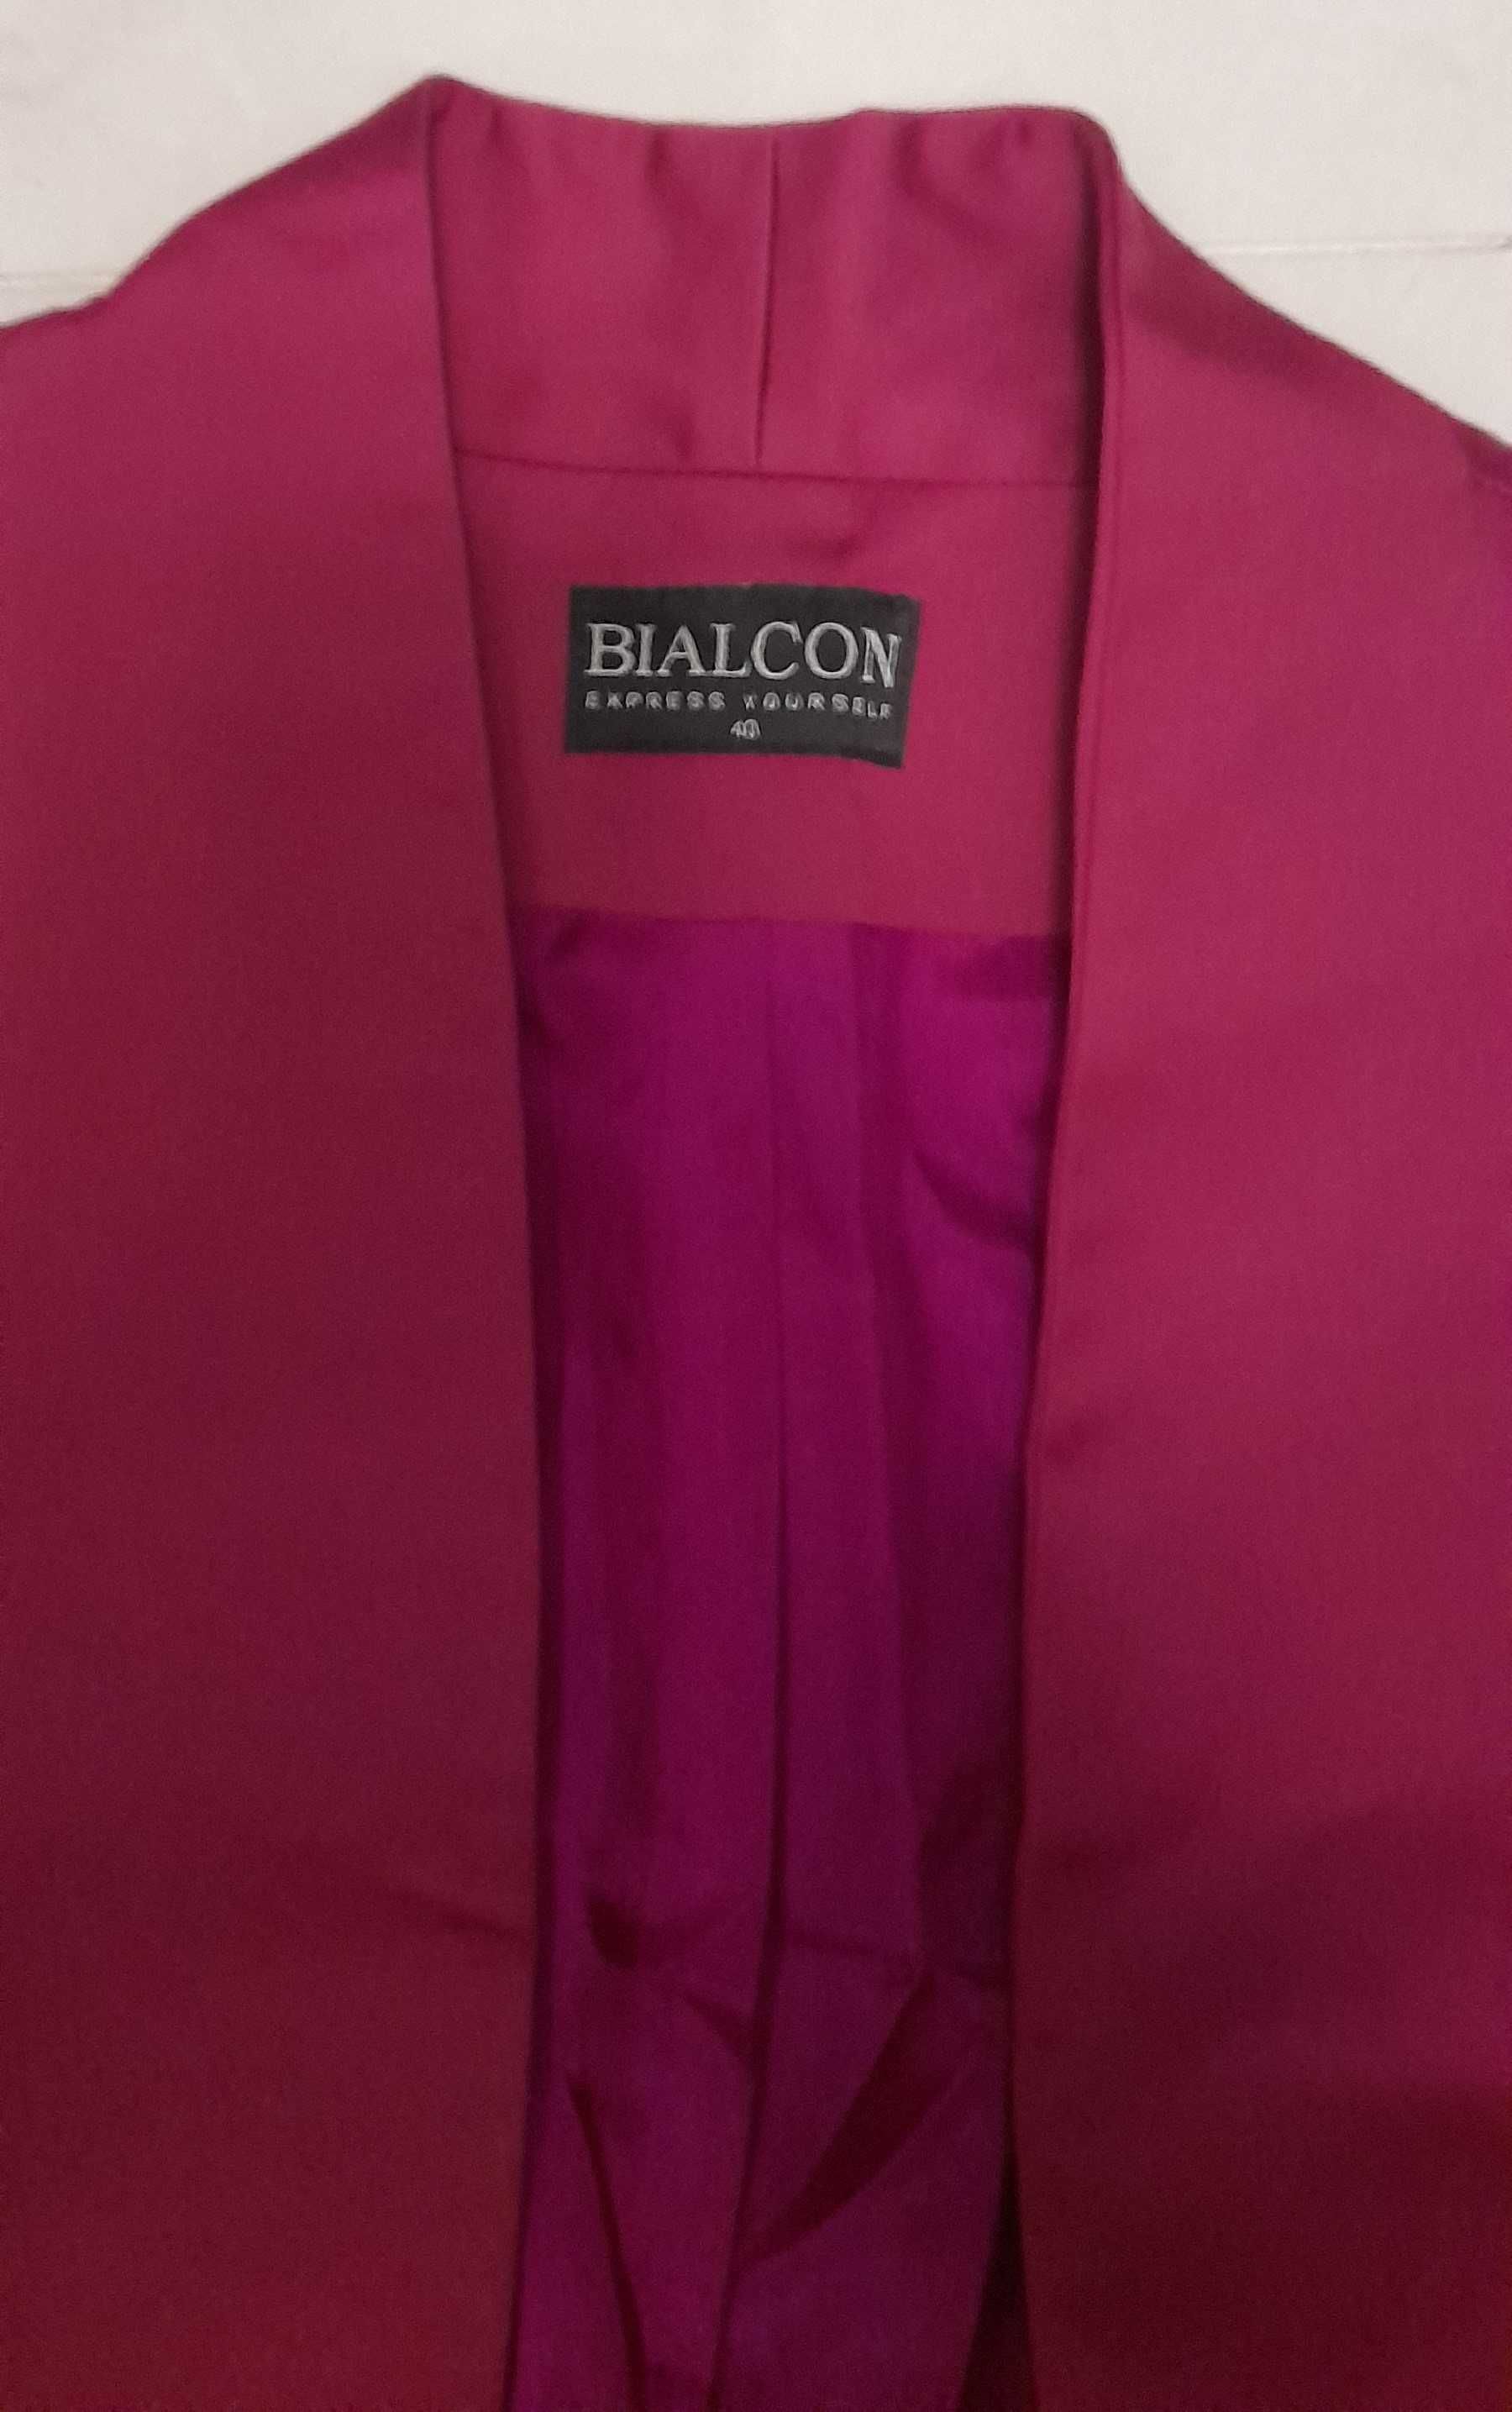 Bolerko żakiet Bialcon rozmiar 40 bordo jeżyna